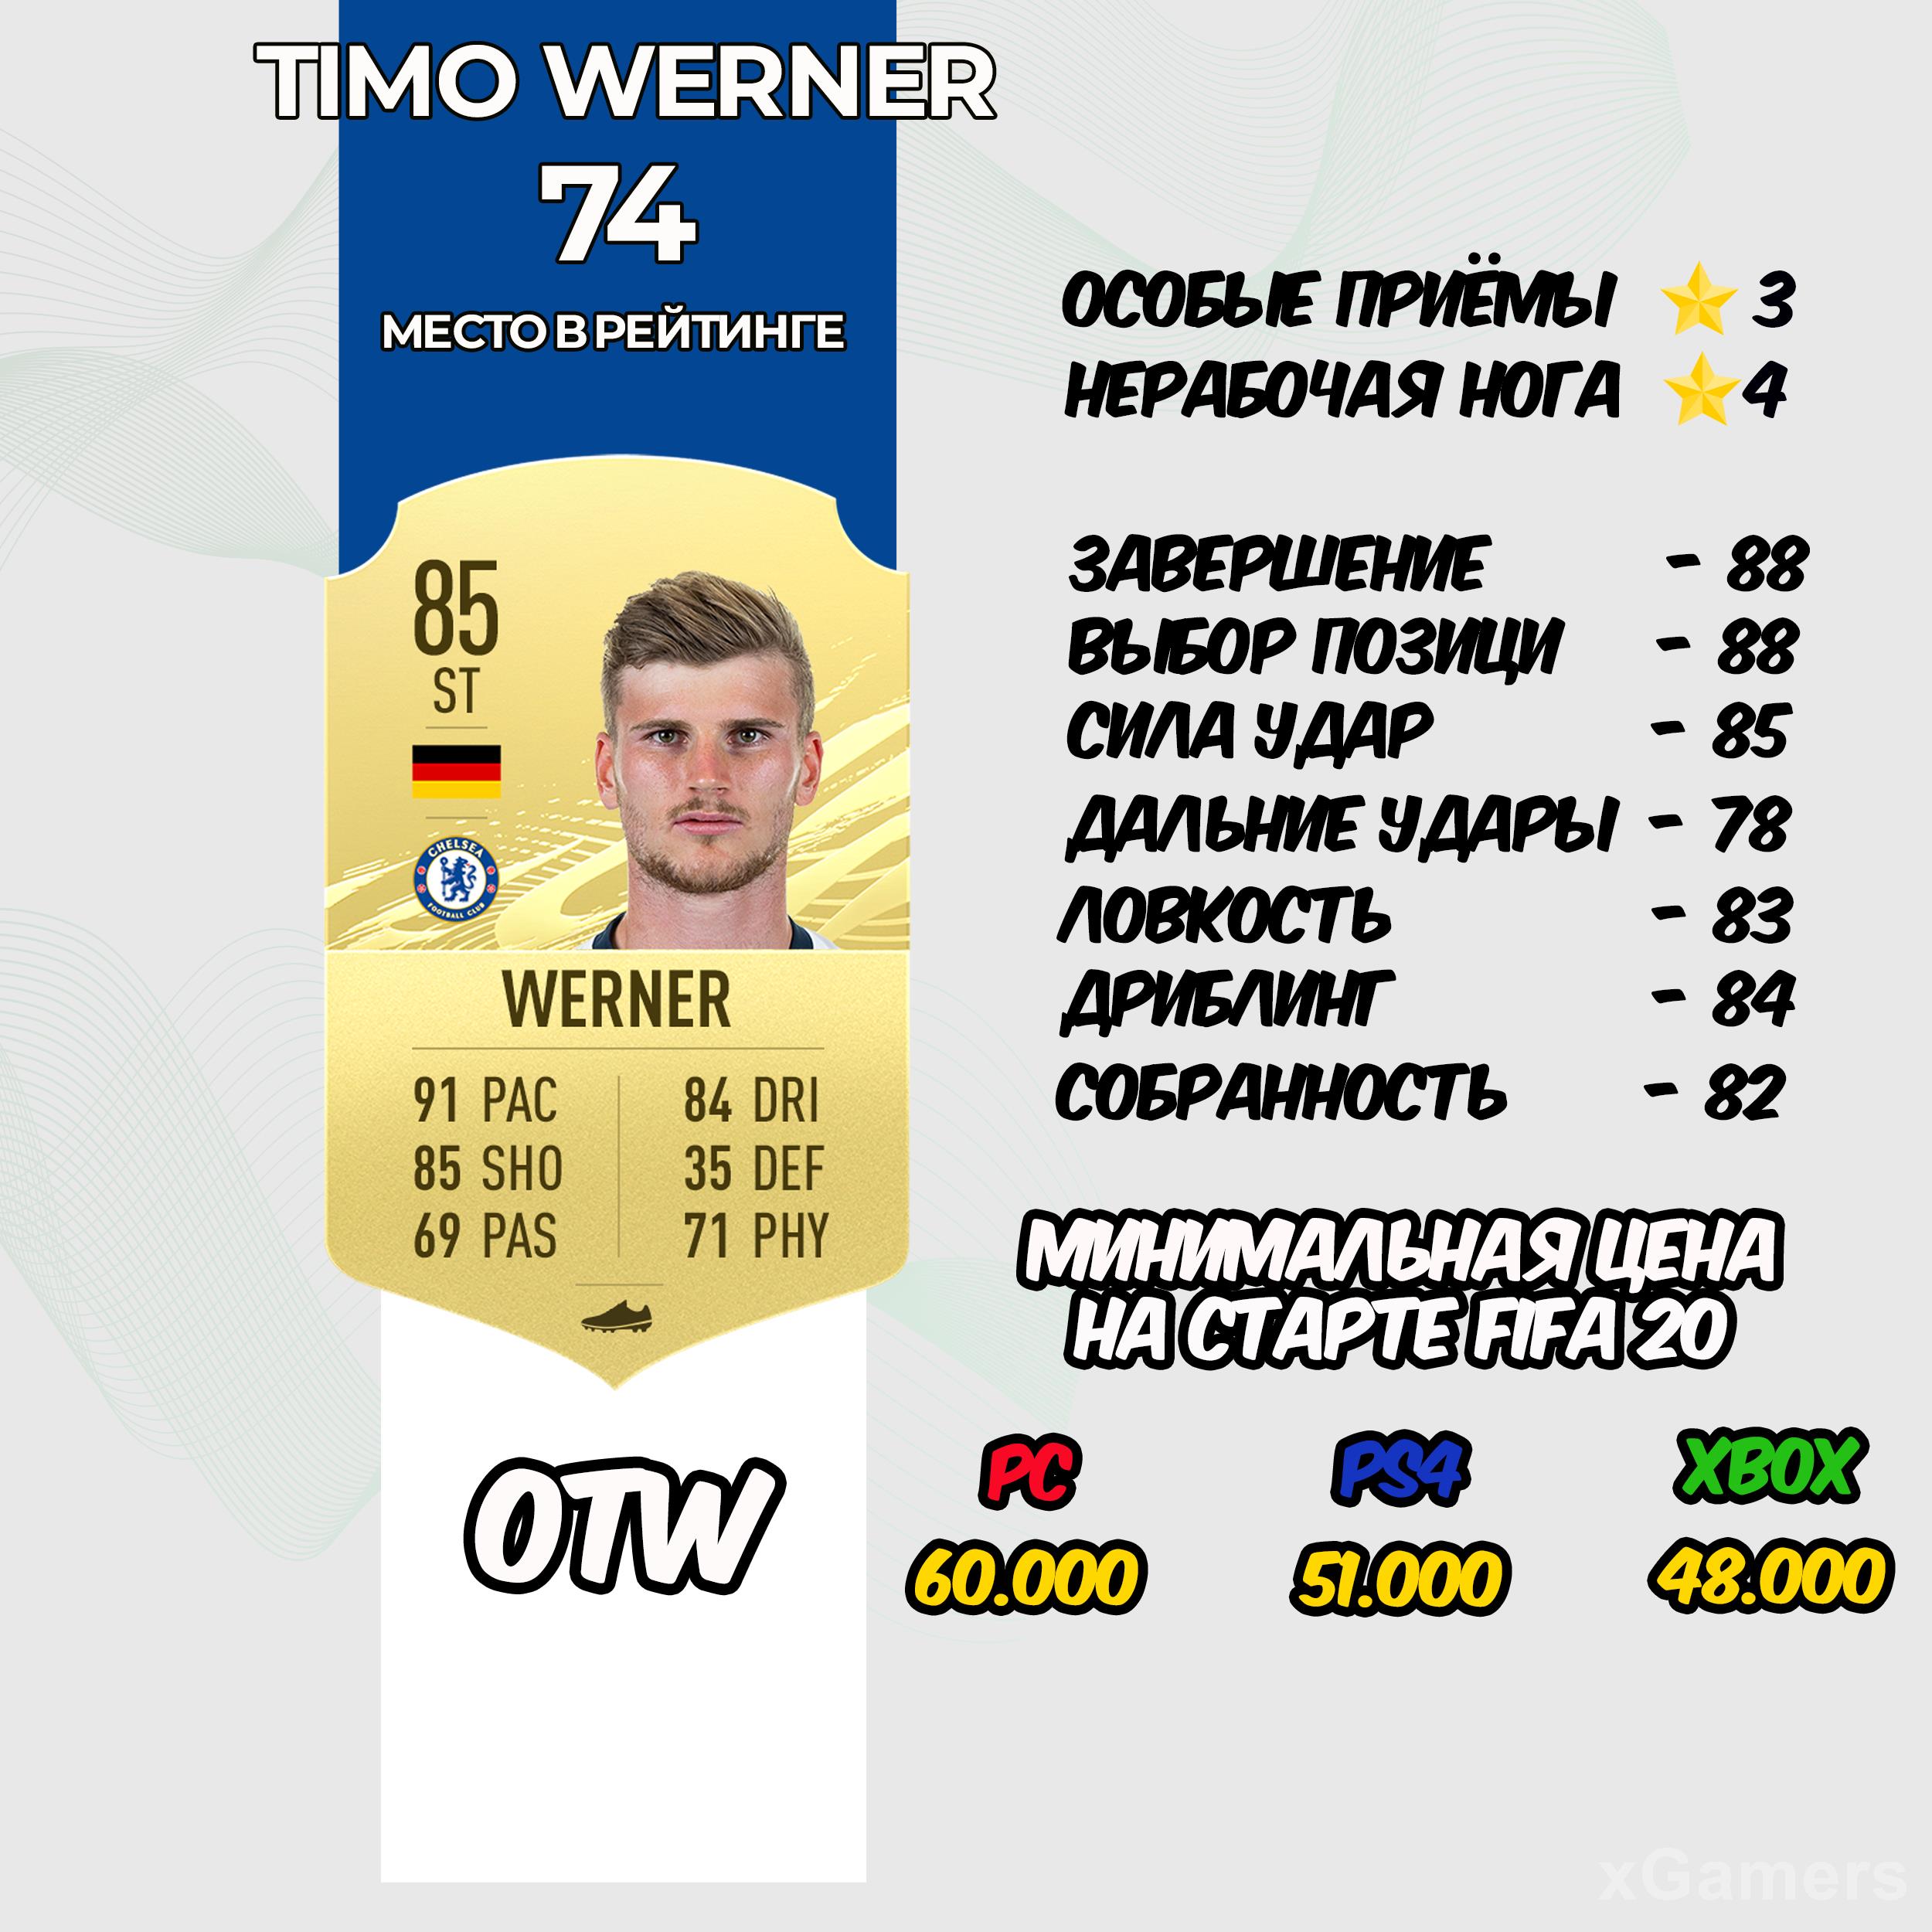 Timo Werner - место в рейтинге 74